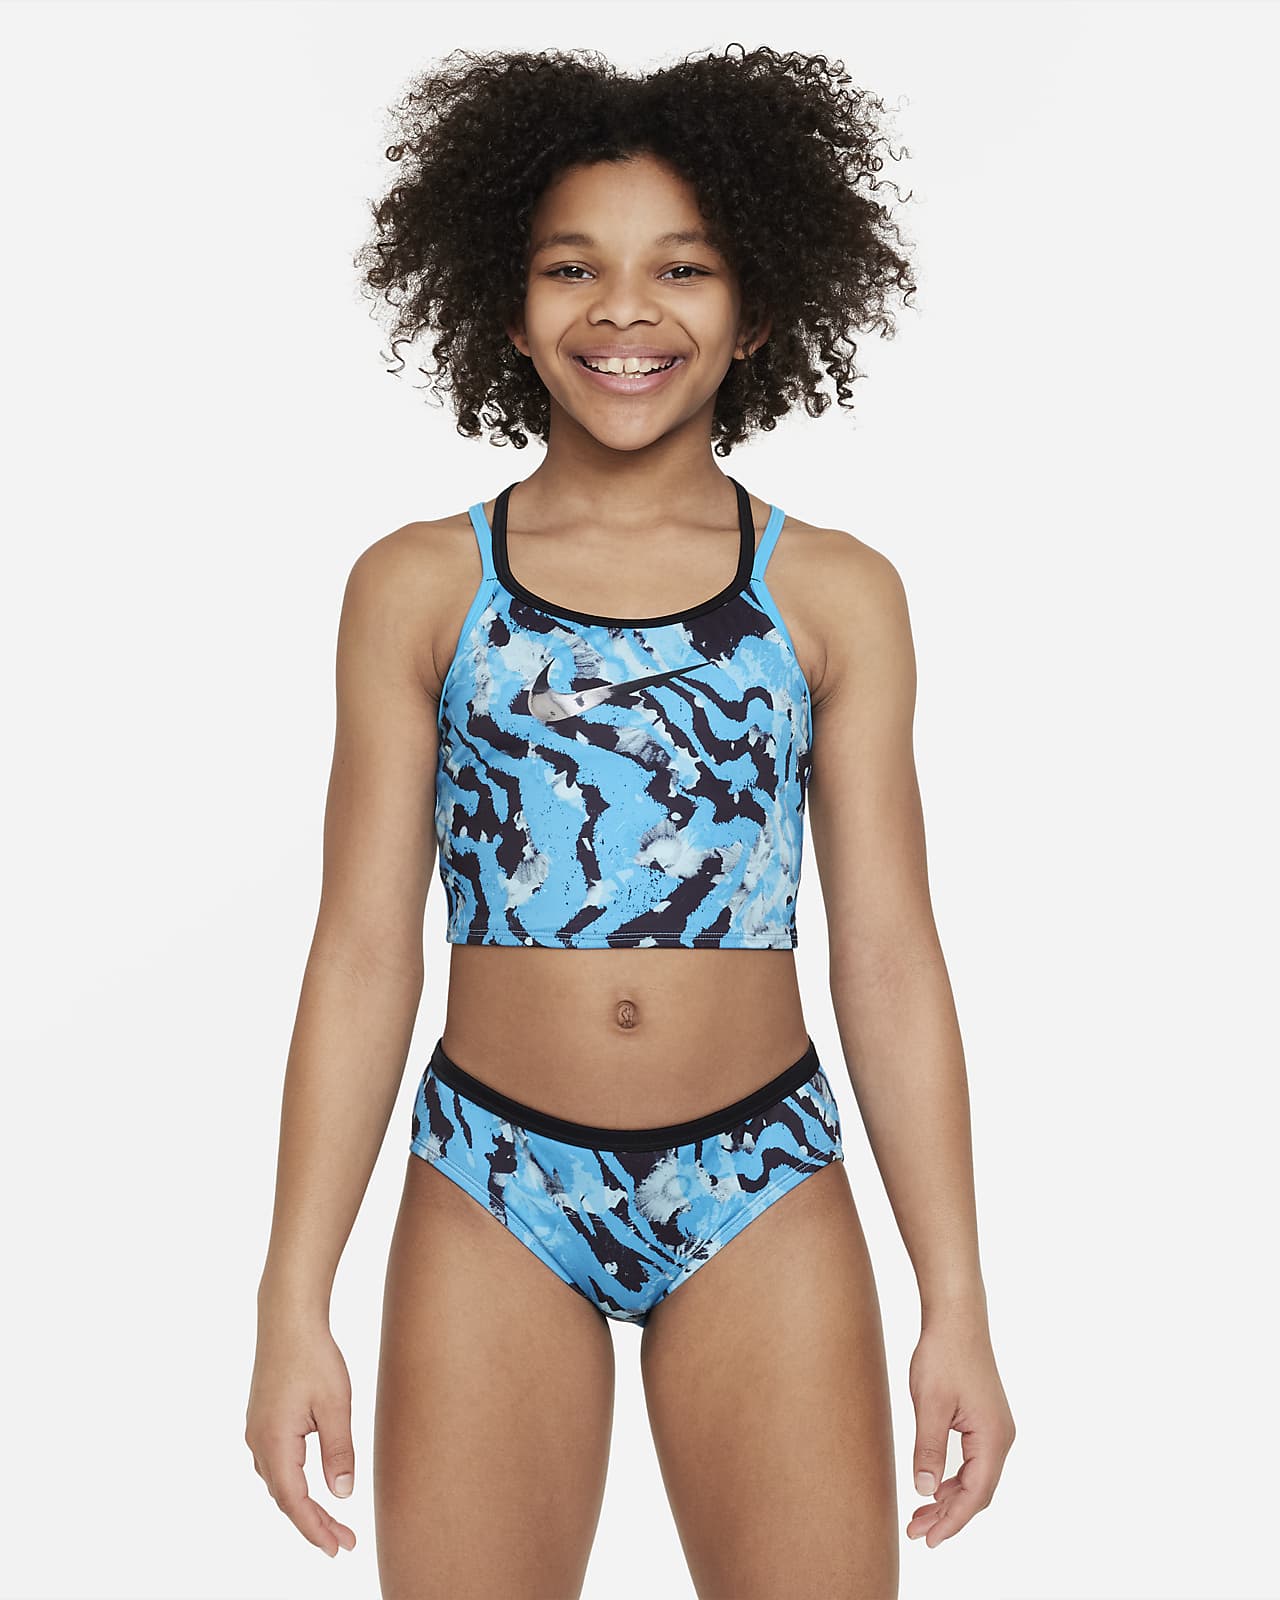 Nike midkinizwemkledingset met gekruiste banden voor meisjes